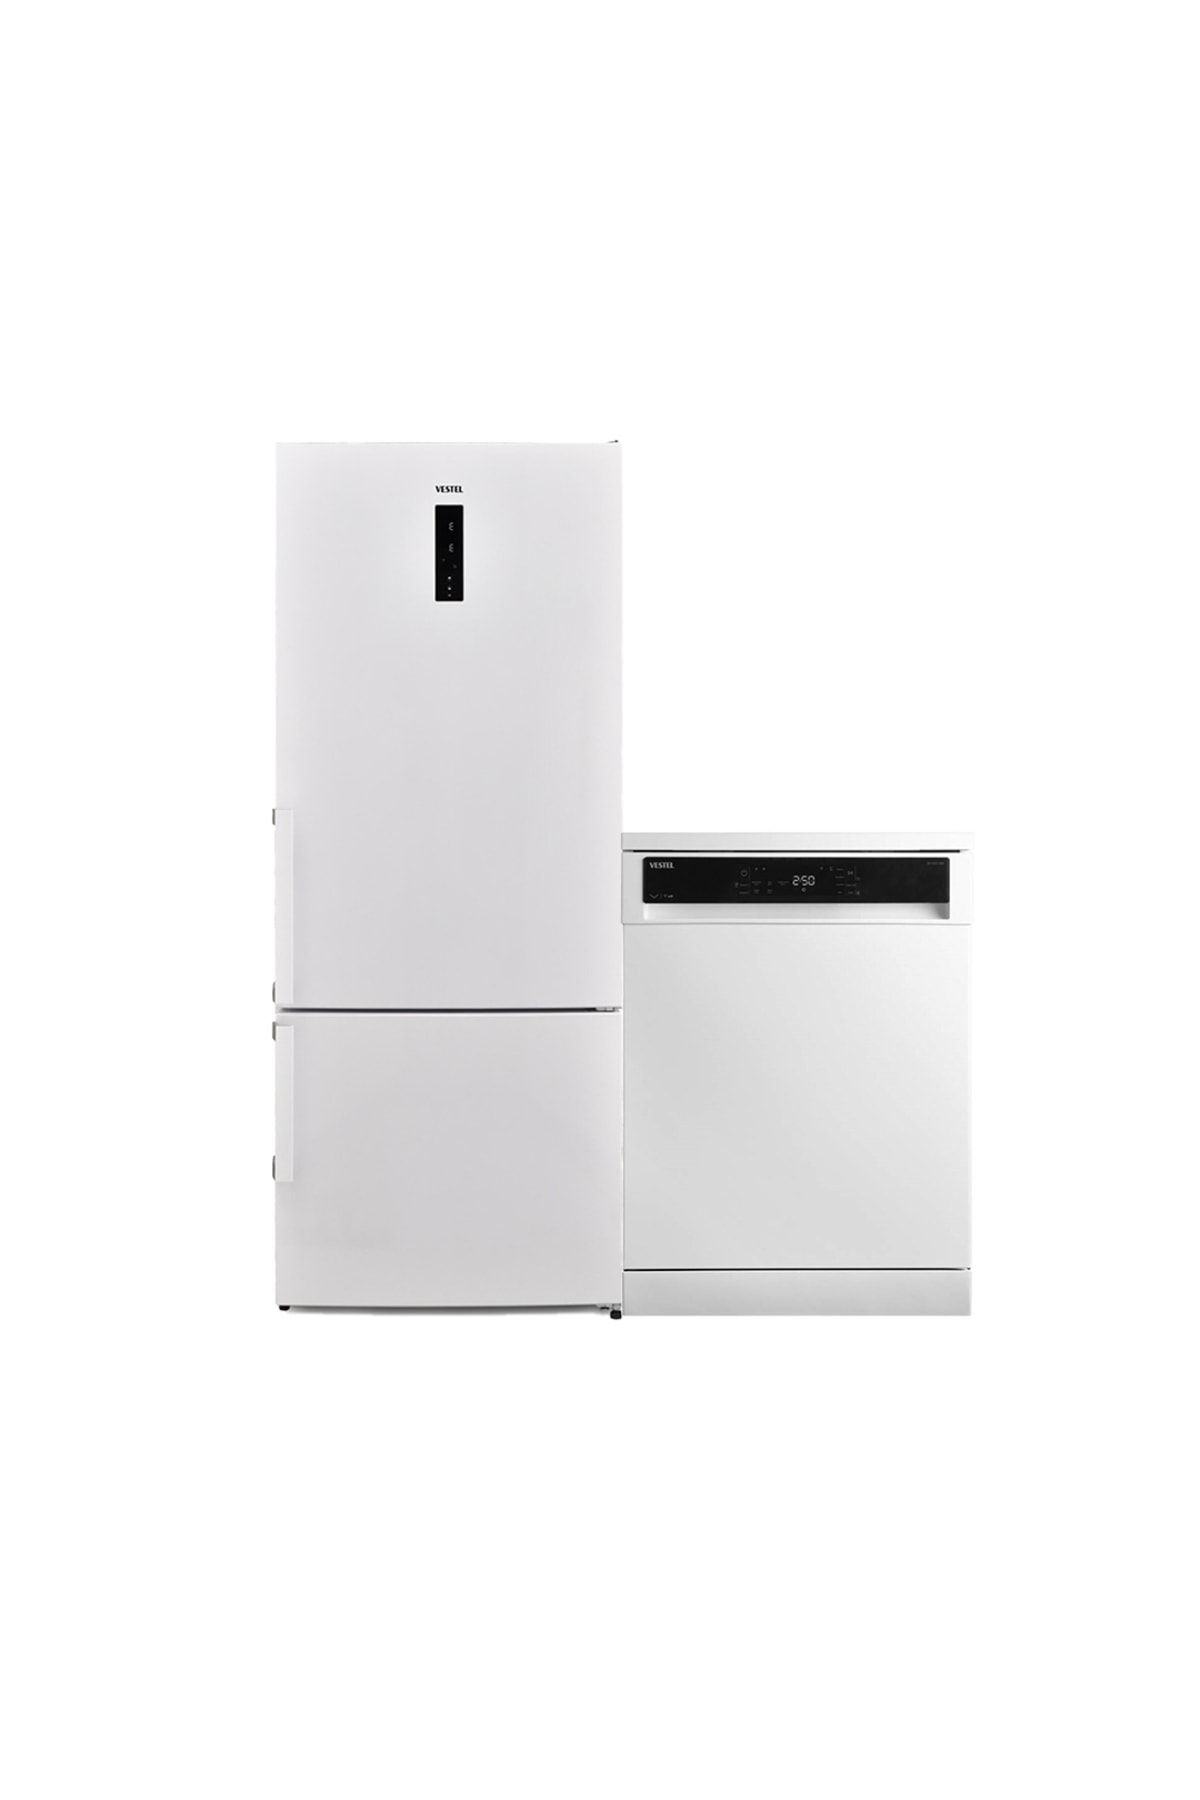 VESTEL Beyaz Eşya Seti 20264835 Nfk60012 E Gı Pro Buzdolabı+20264046 Bm 5302 5 Prg Bulaşık Makinesi